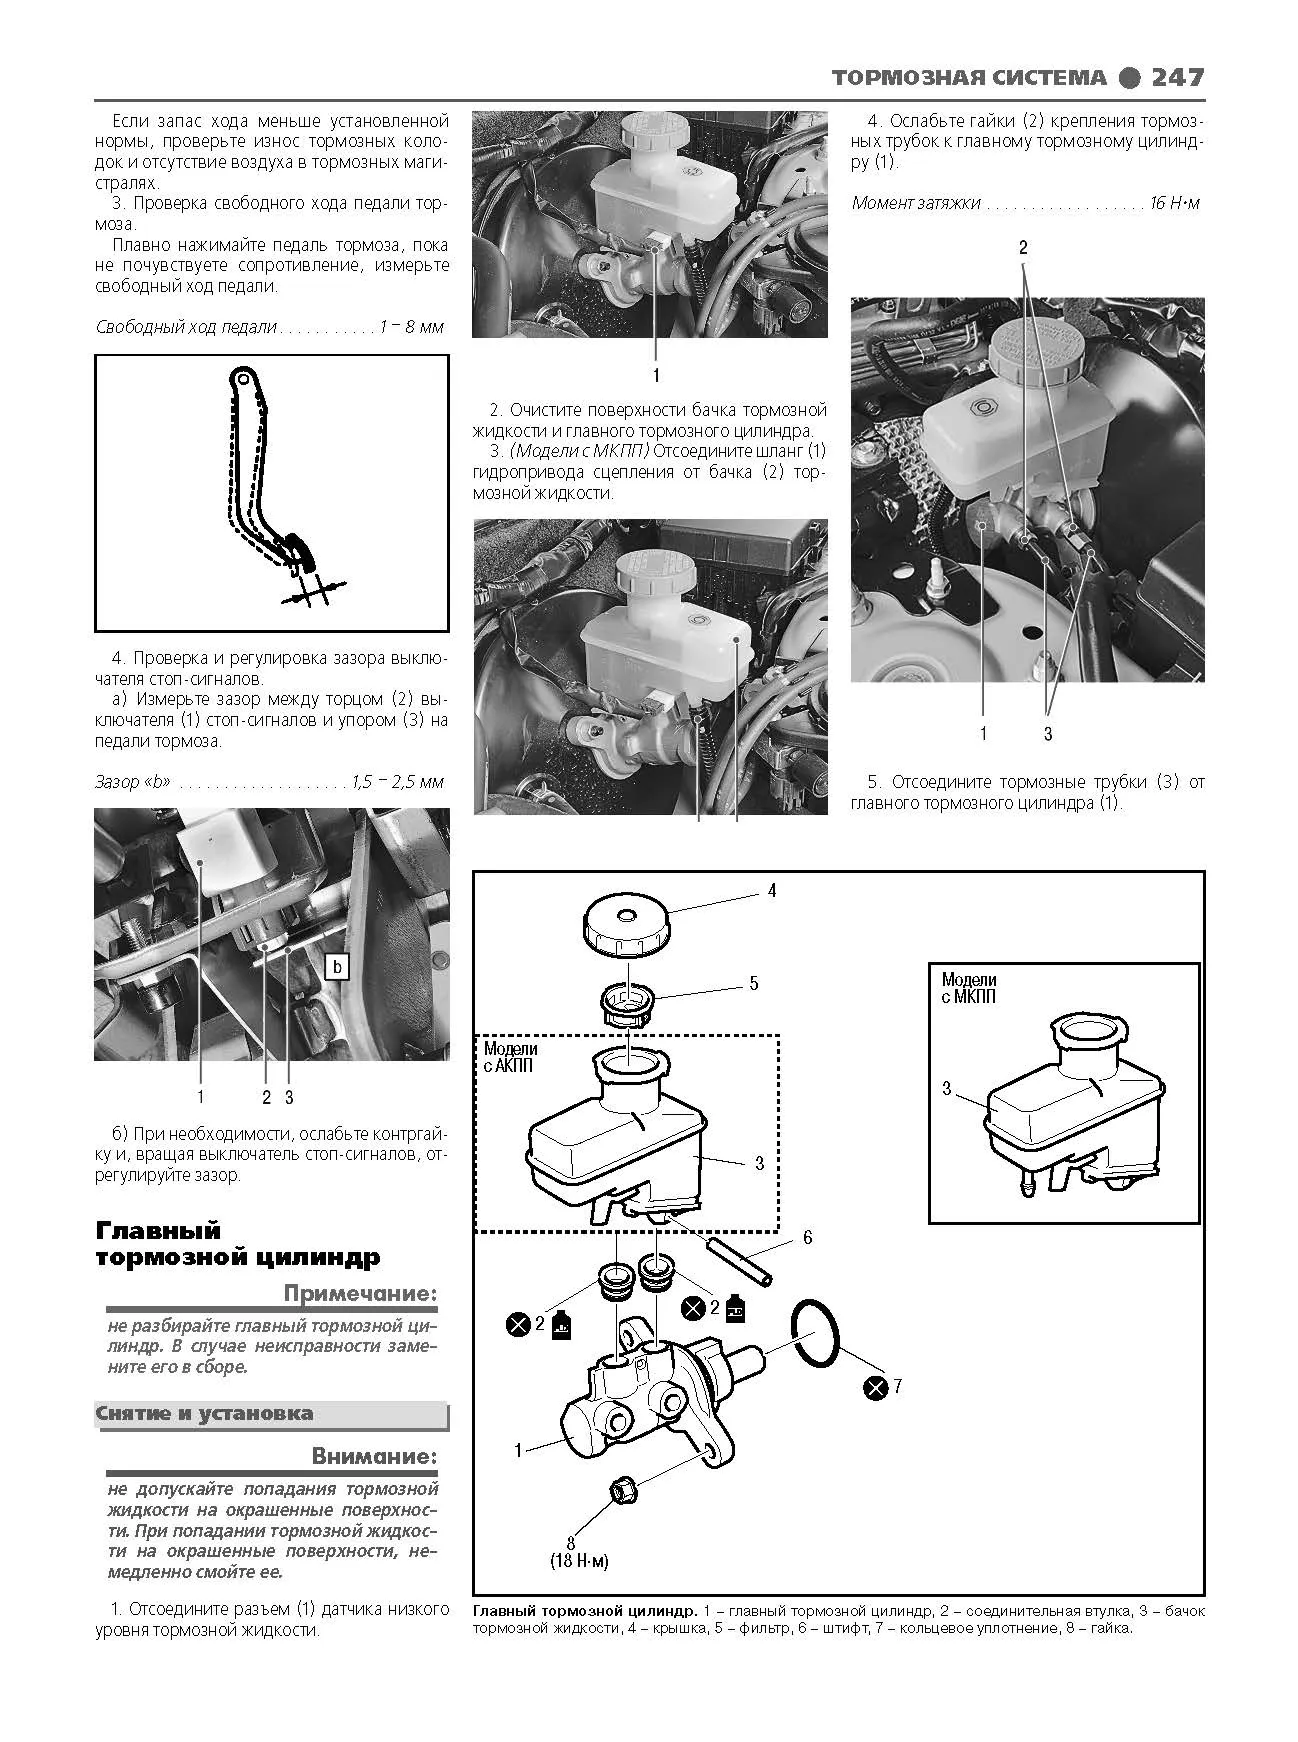 Книга Suzuki Grand Vitara с 2005 бензин, каталог з/ч, ч/б фото, электросхемы. Руководство по ремонту и эксплуатации автомобиля. Профессионал. Легион-Aвтодата